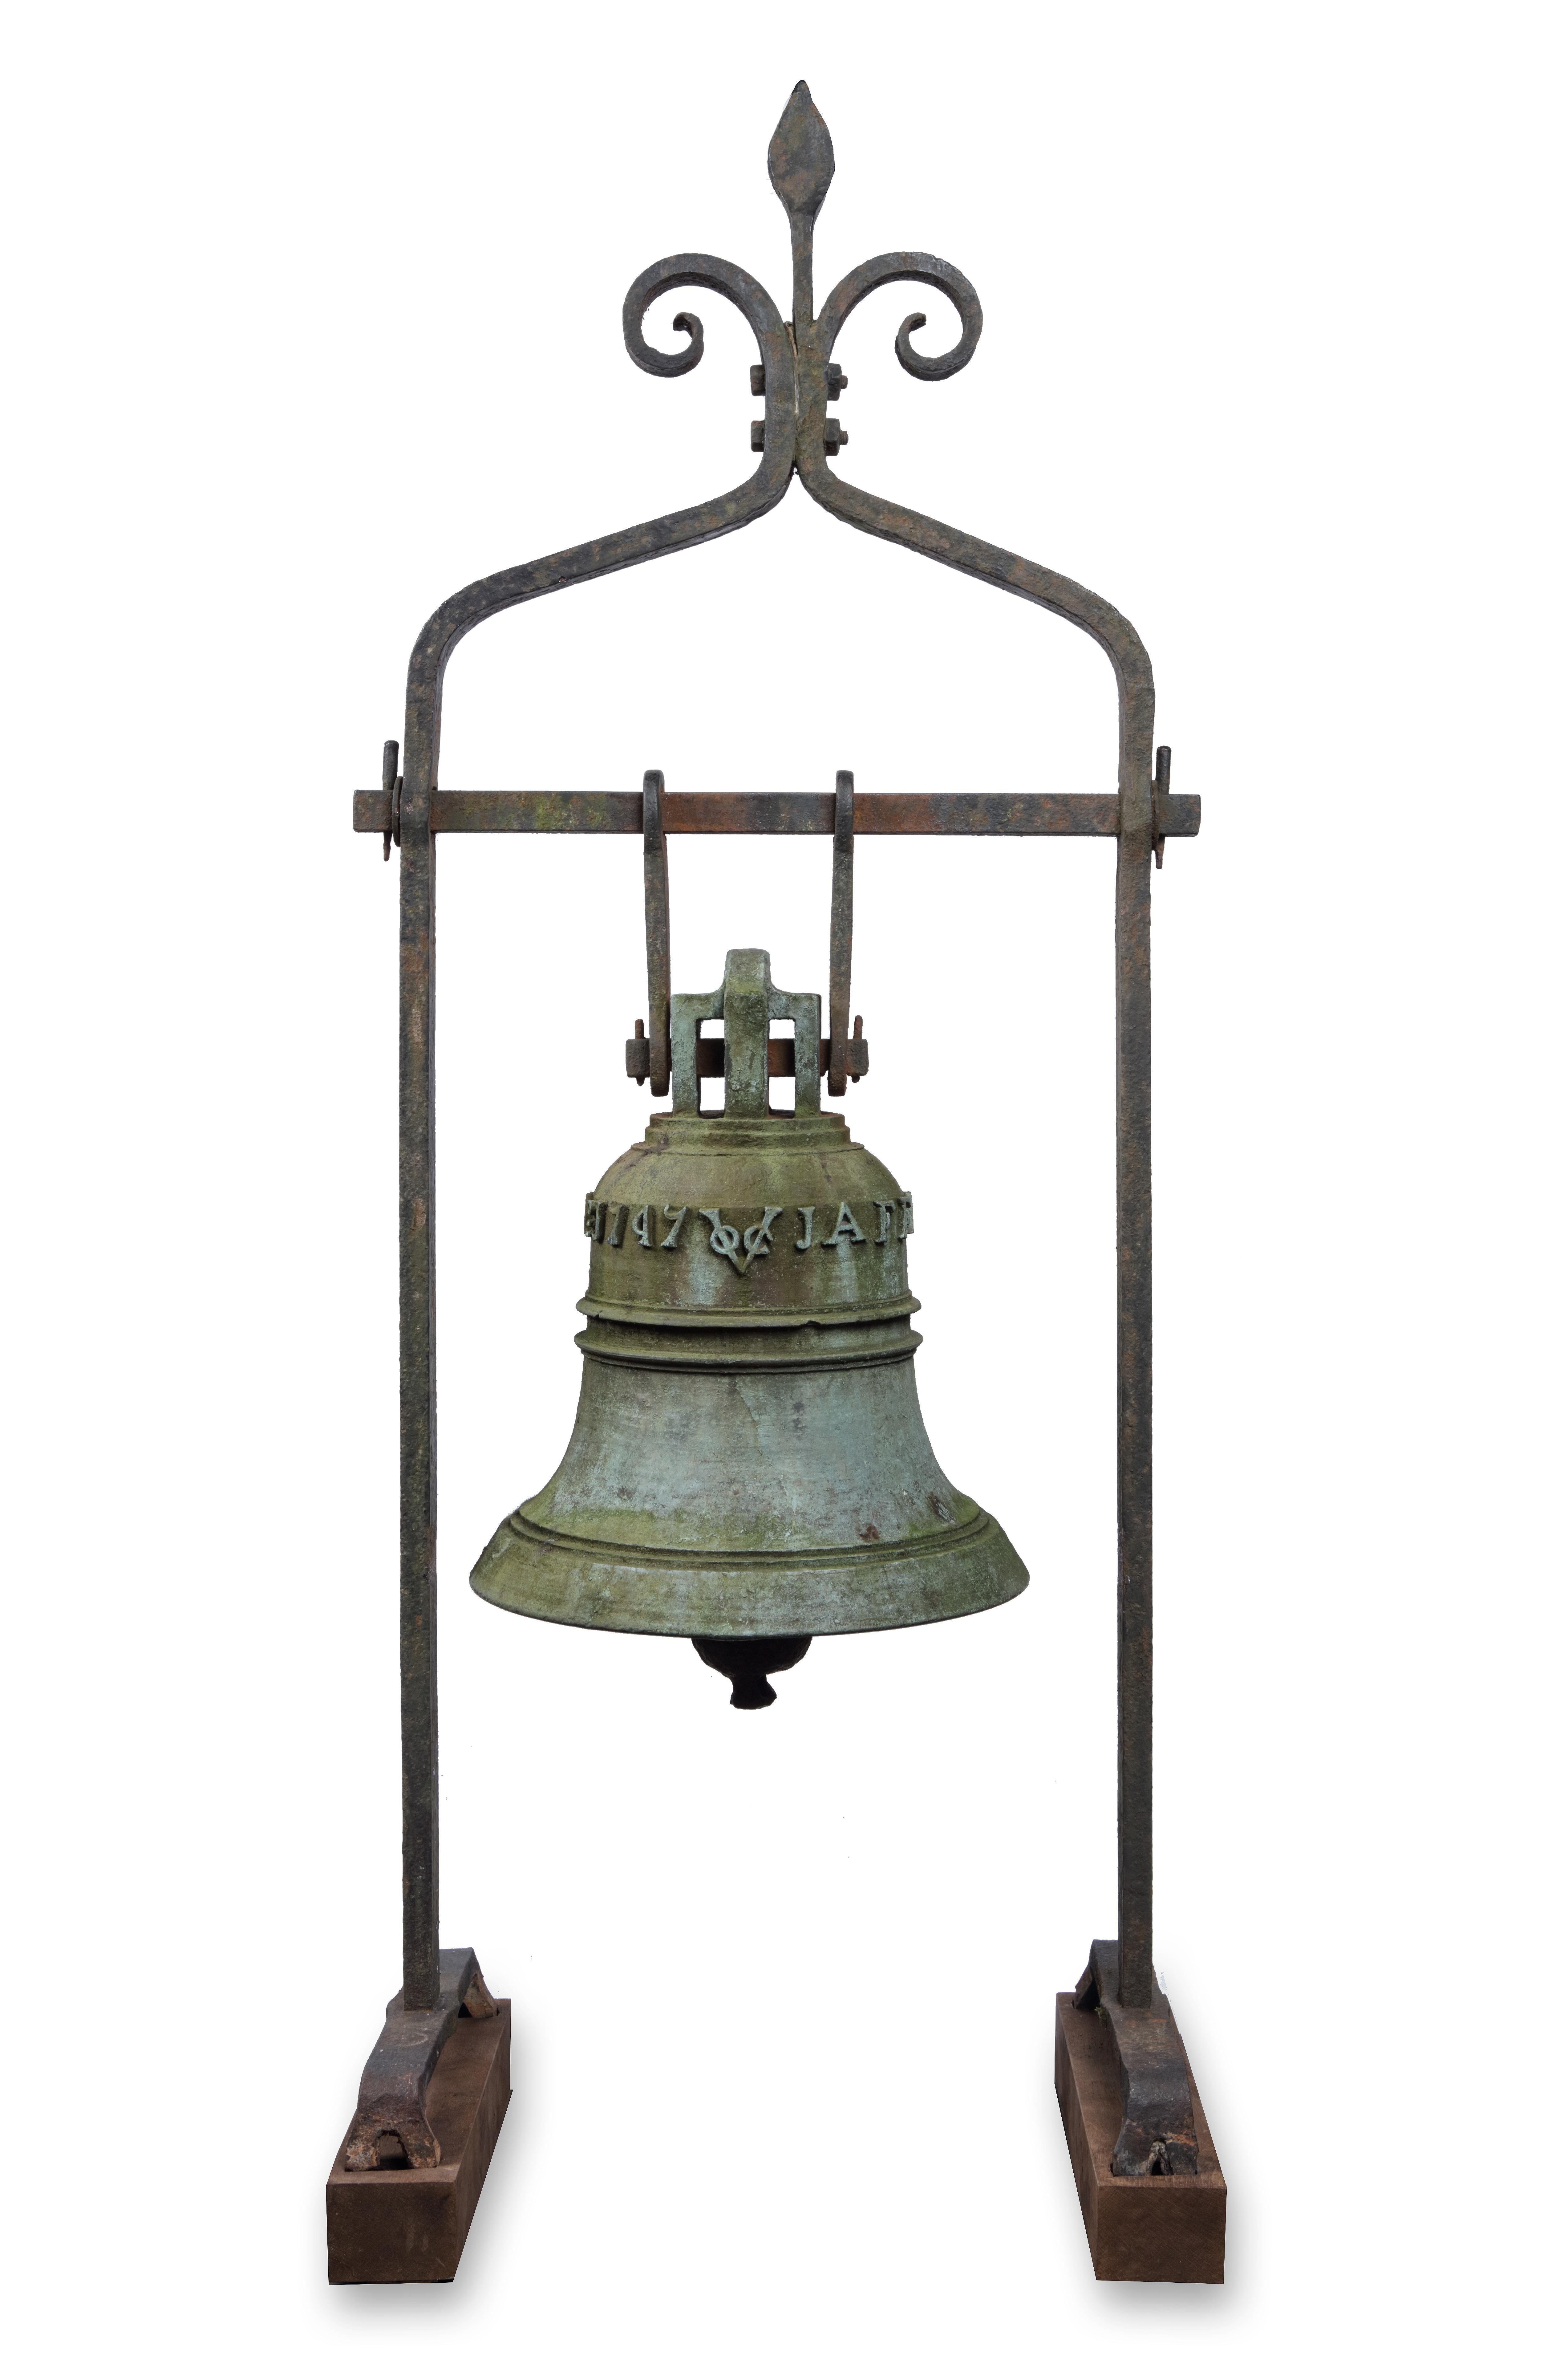 Die Glocke der VOC-Festung in Jaffna, Sri Lanka, trägt die Aufschrift JAFFANAPATNAM Ao 1747 VOC

Gegossen in Jaffnapatnam oder Colombo aus japanischem Kupfer, 1747

Maße: Höhe 44 x Durchmesser 36,5 cm

Im Jahr 1658 eroberte Rijcklof van Goens